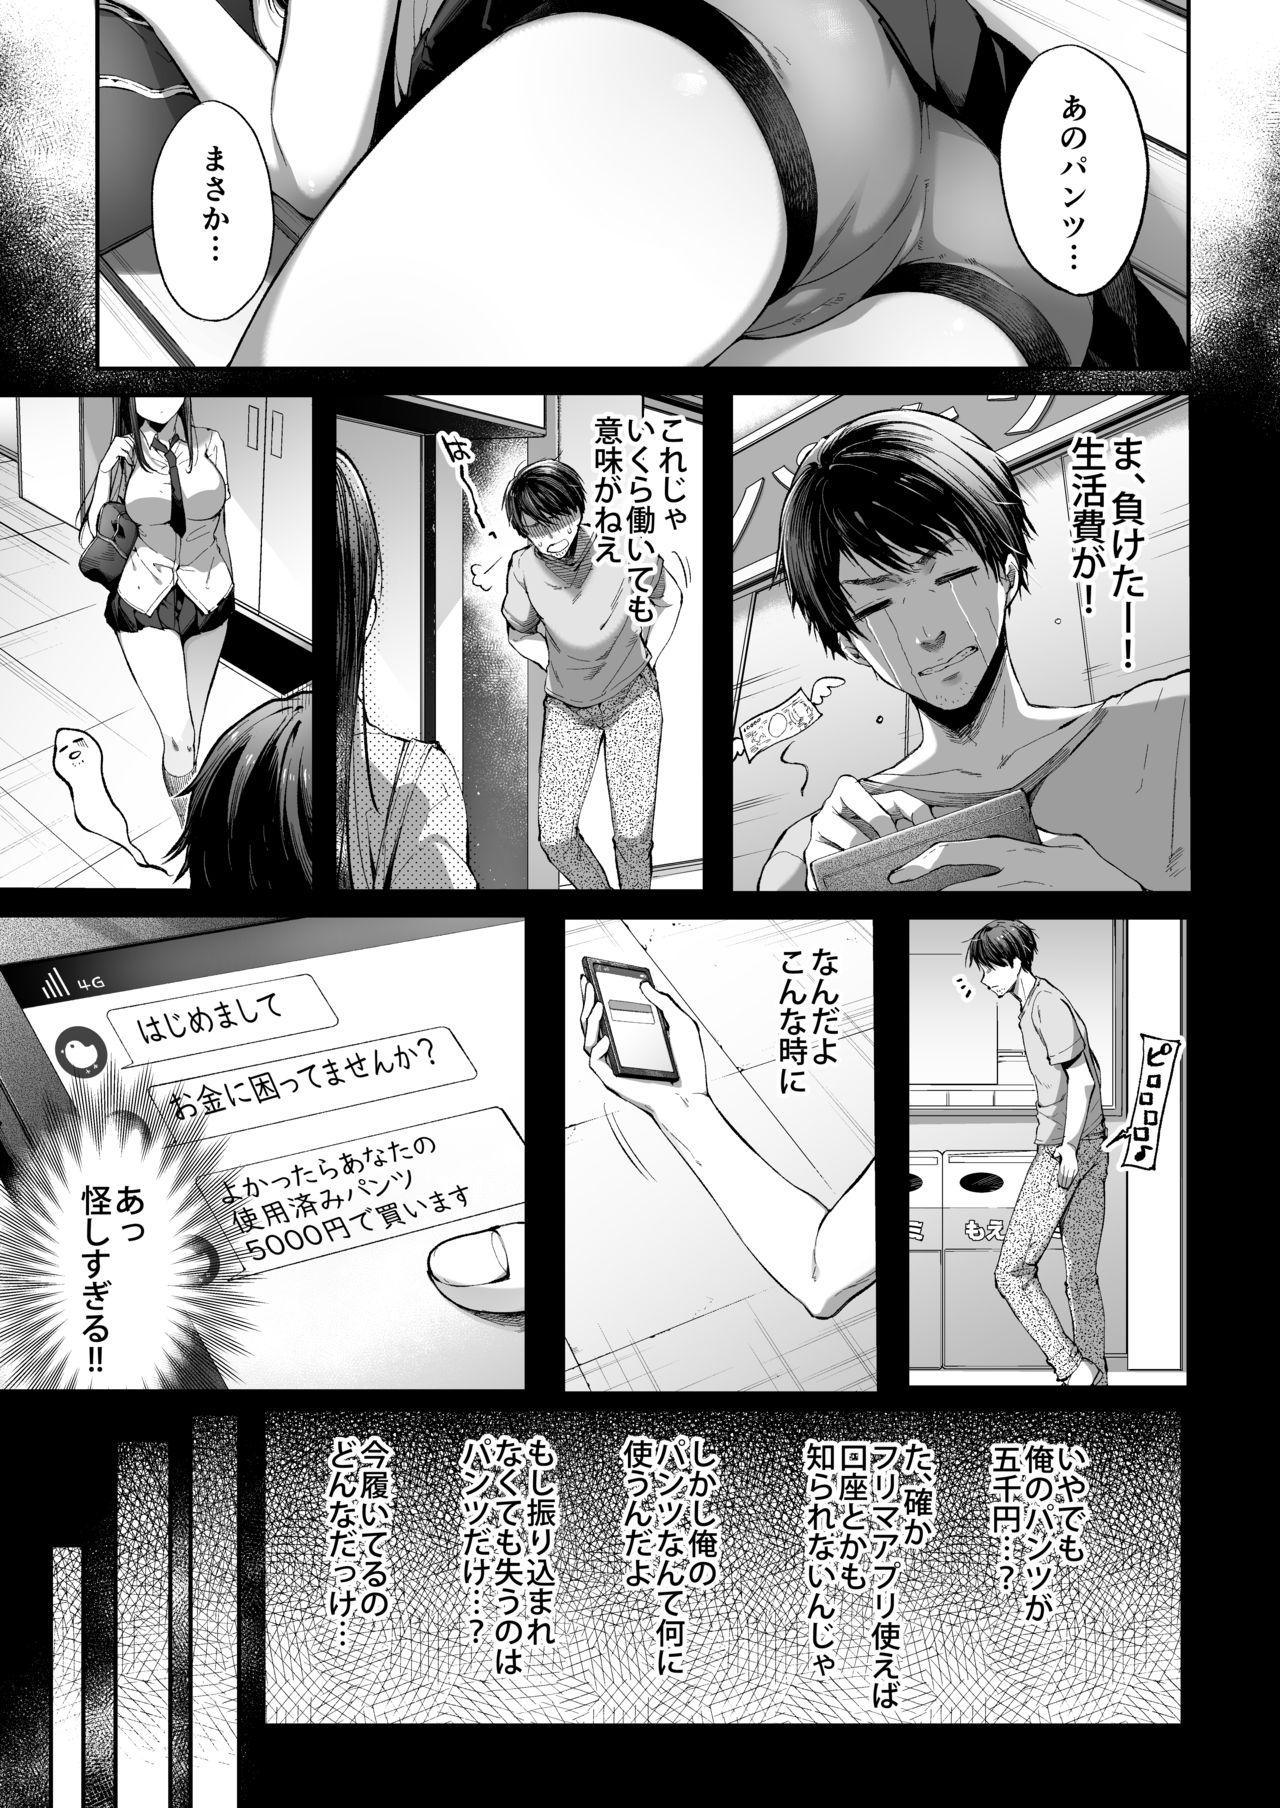 Eating Muttsuri Sukebe na JK wa Suki desu ka? - Original Self - Page 4